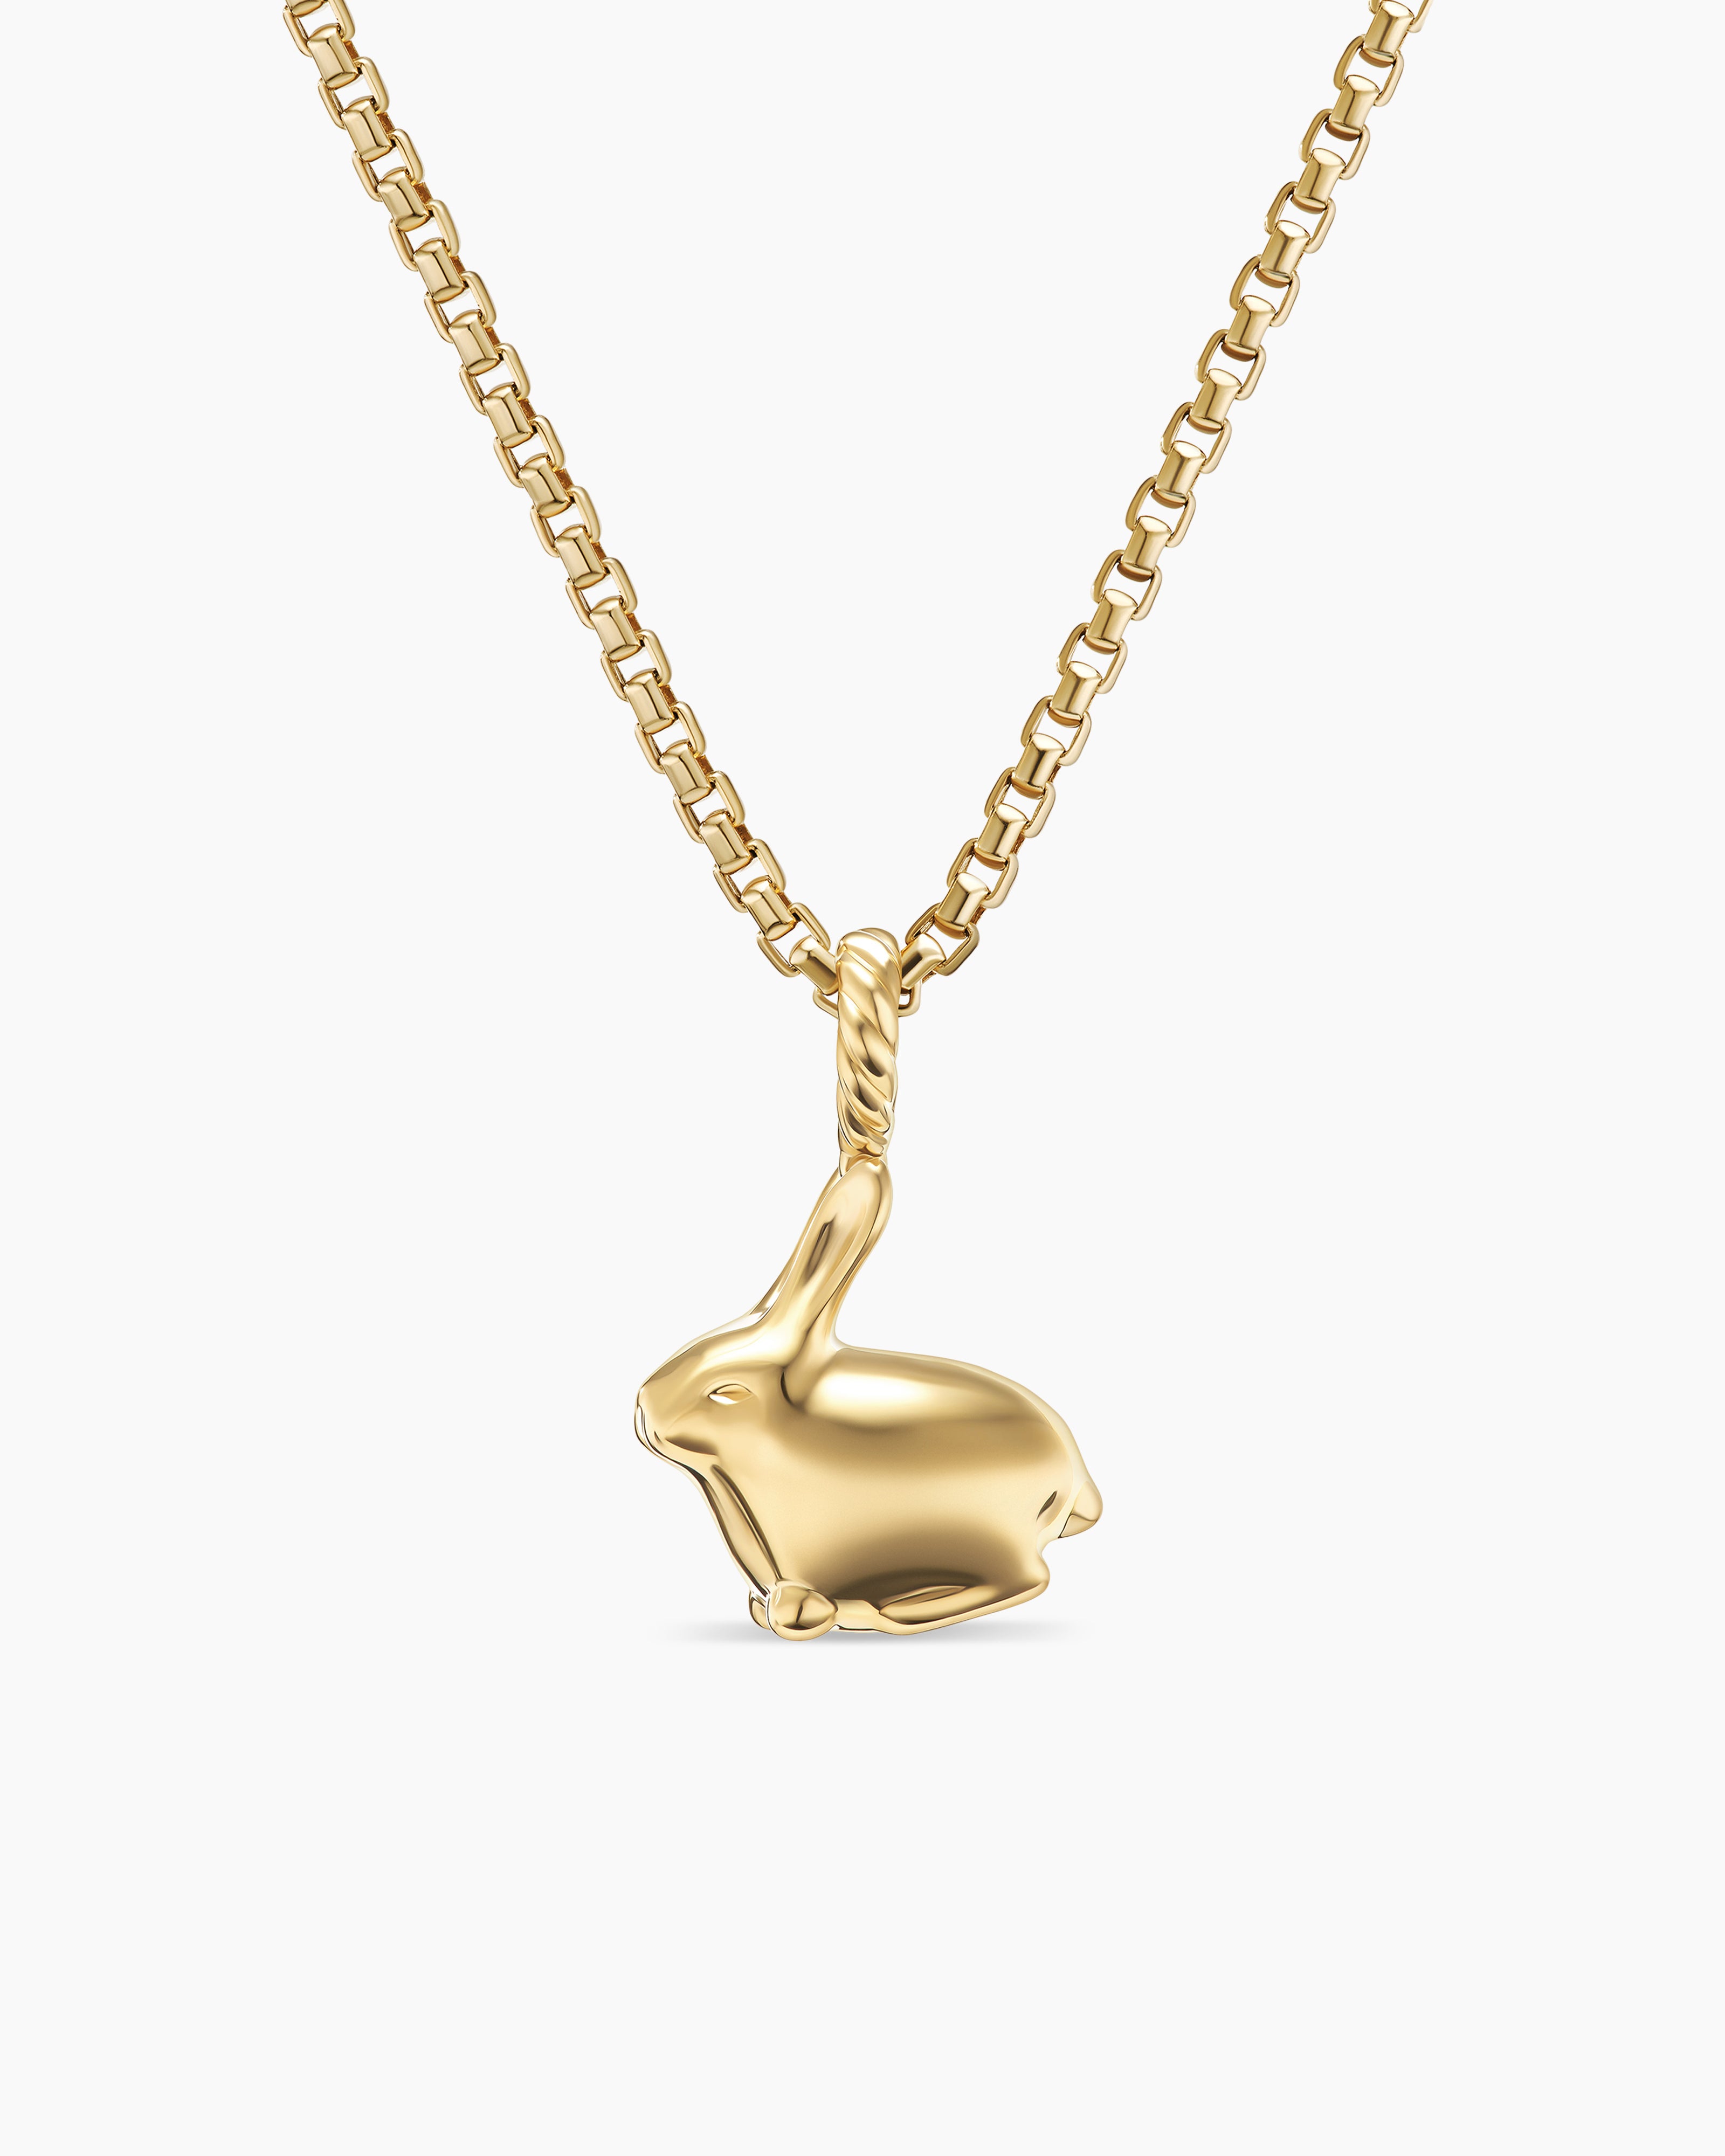 David Yurman Bunny Charm Necklace